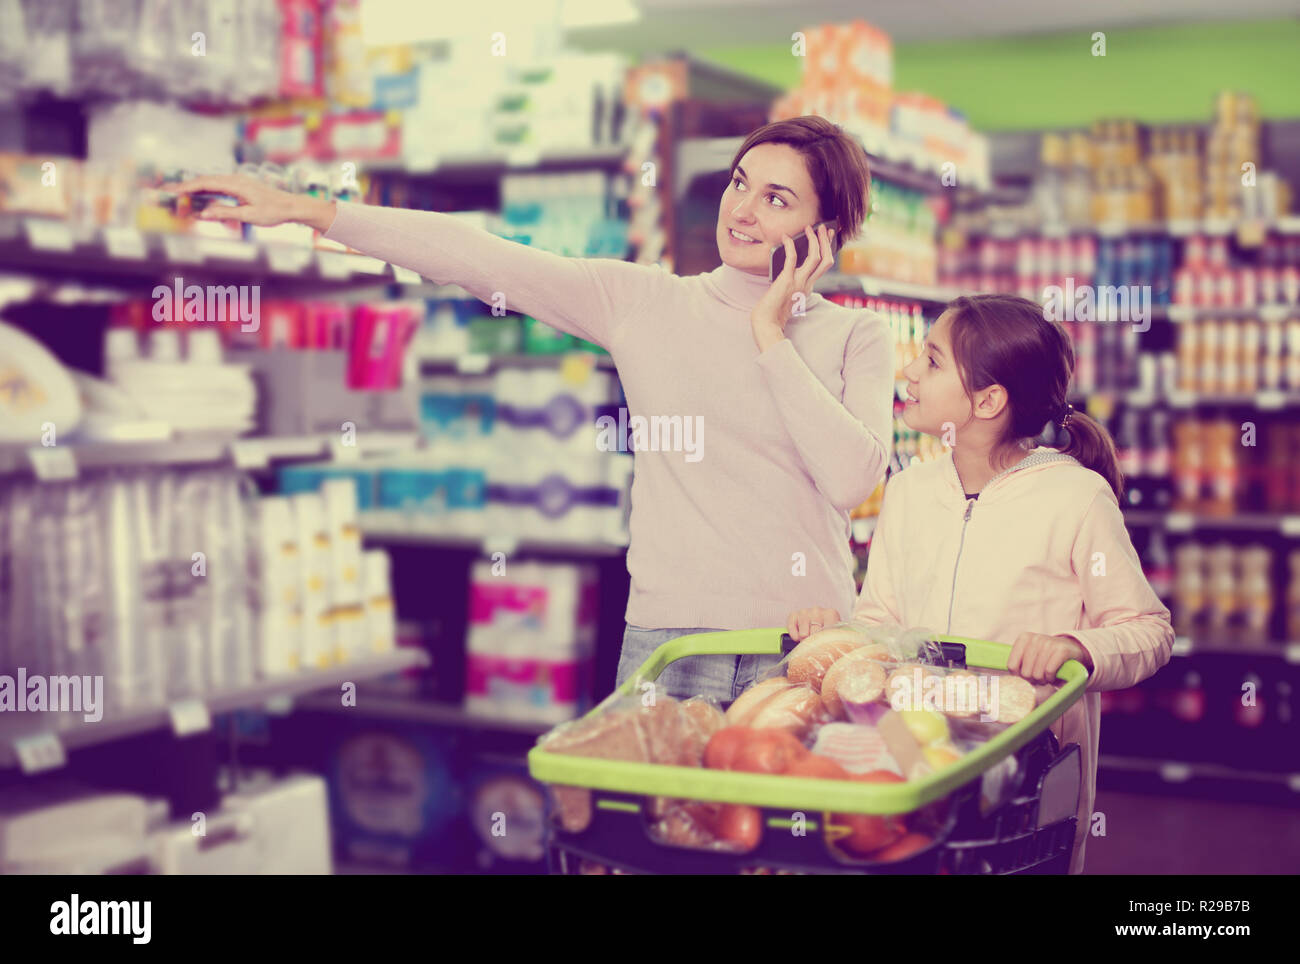 Glückliche junge Frau Kunde mit Mädchen telefonieren über das Einkaufen im Supermarkt zu konsultieren Stockfoto